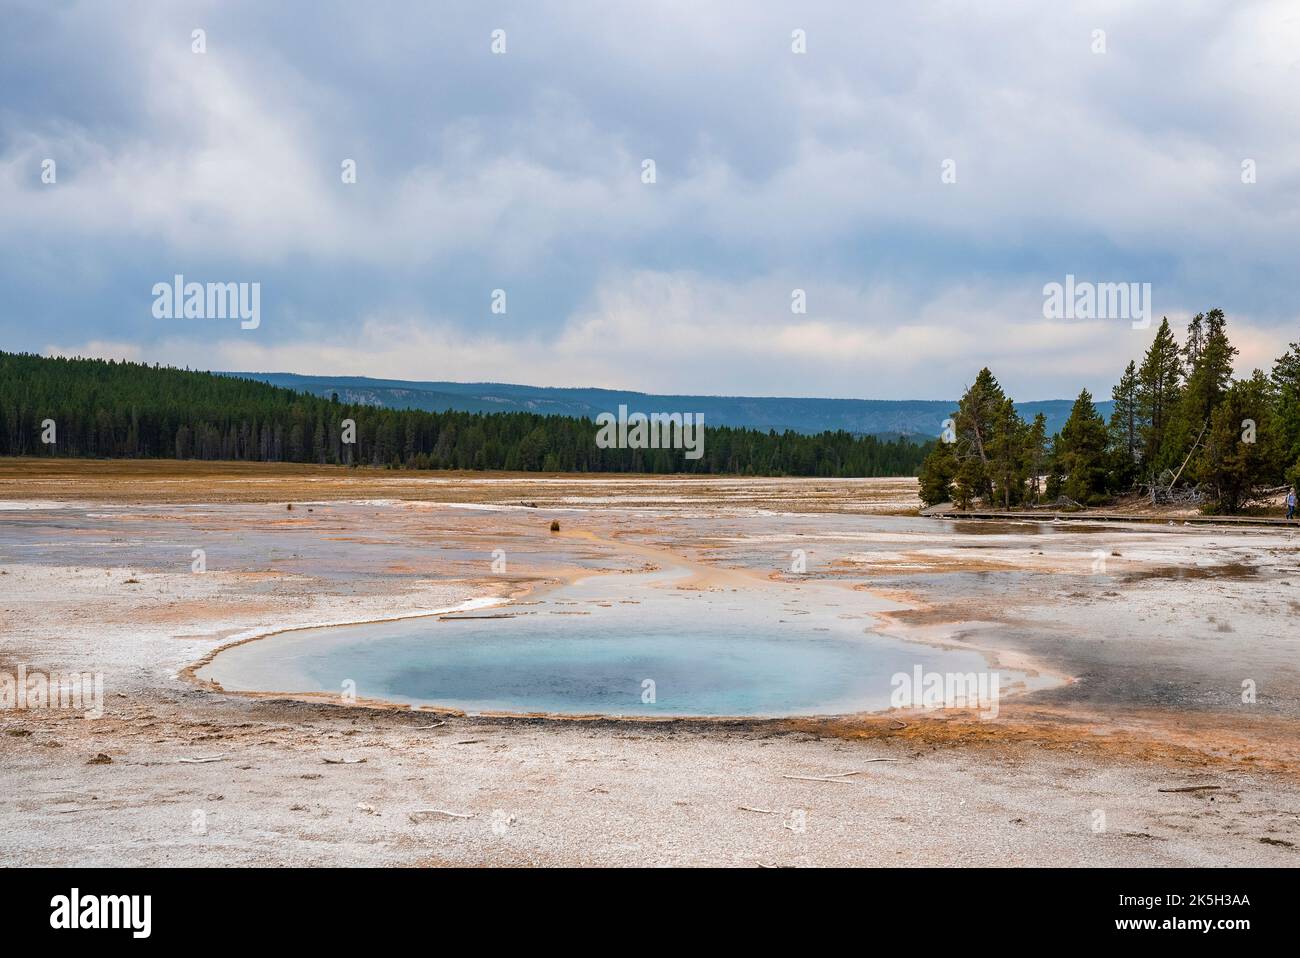 Splendida vista della piscina termale calda in mezzo al paesaggio con cielo nuvoloso sullo sfondo Foto Stock